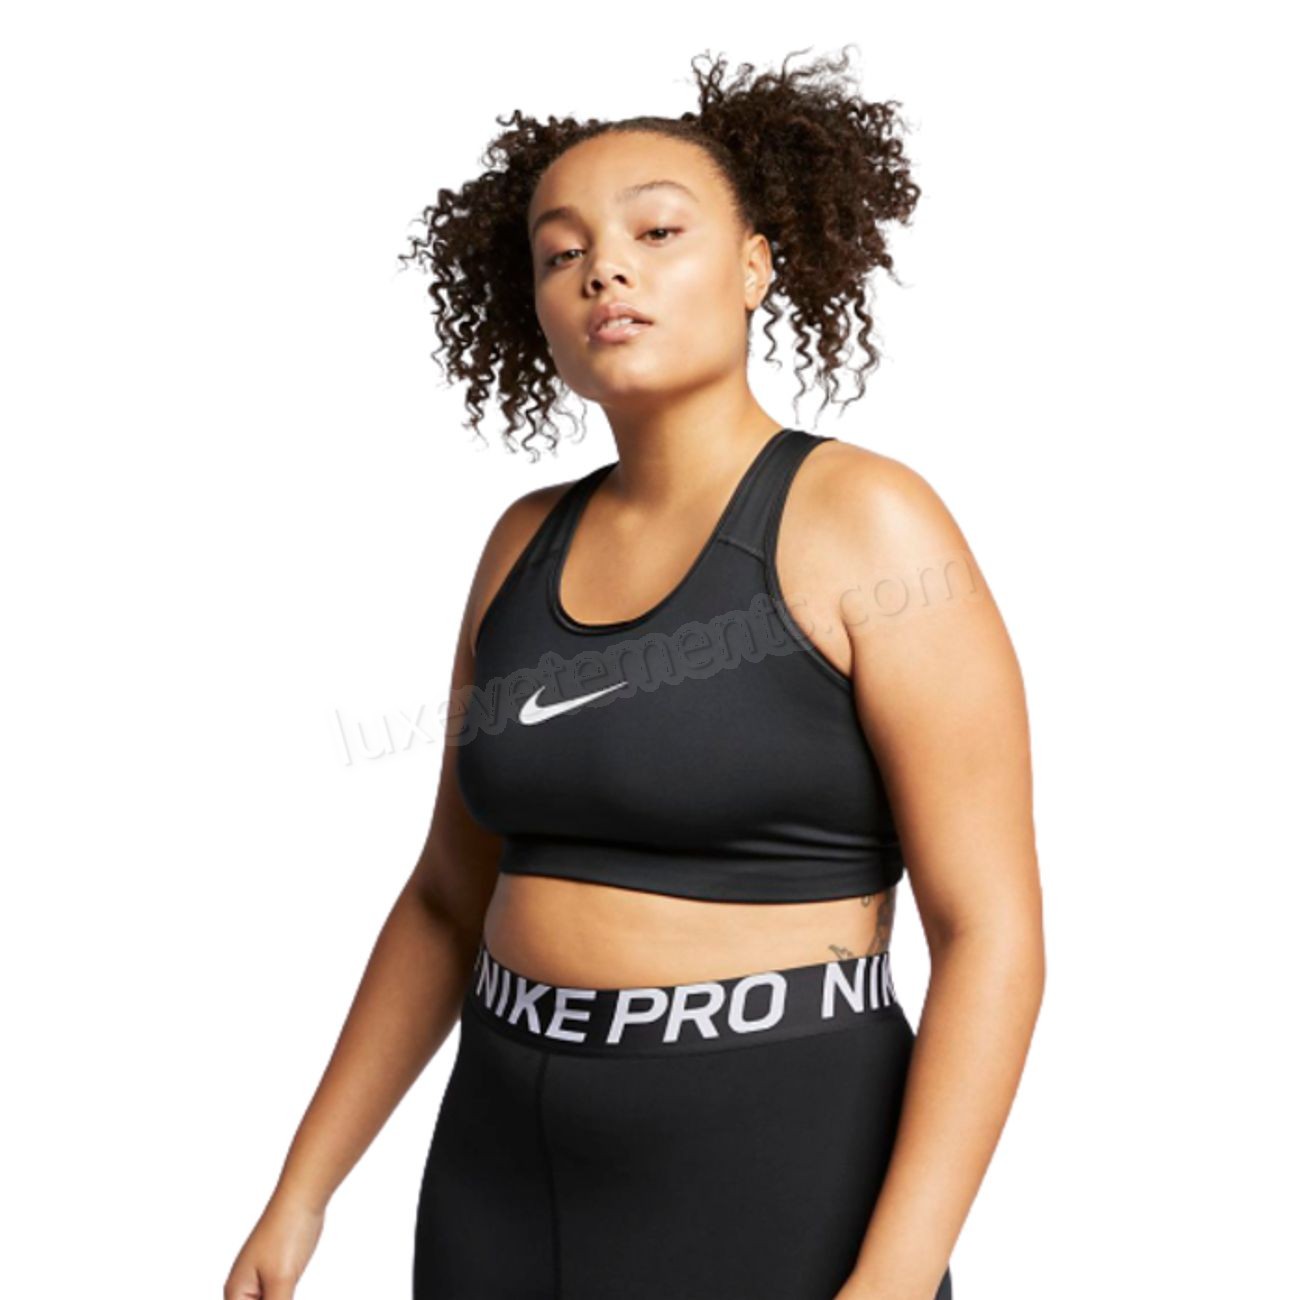 Nike-BRASSIERE Cardio Fitness femme NIKE Nike Swoosh (grande taille) Vente en ligne - Nike-BRASSIERE Cardio Fitness femme NIKE Nike Swoosh (grande taille) Vente en ligne